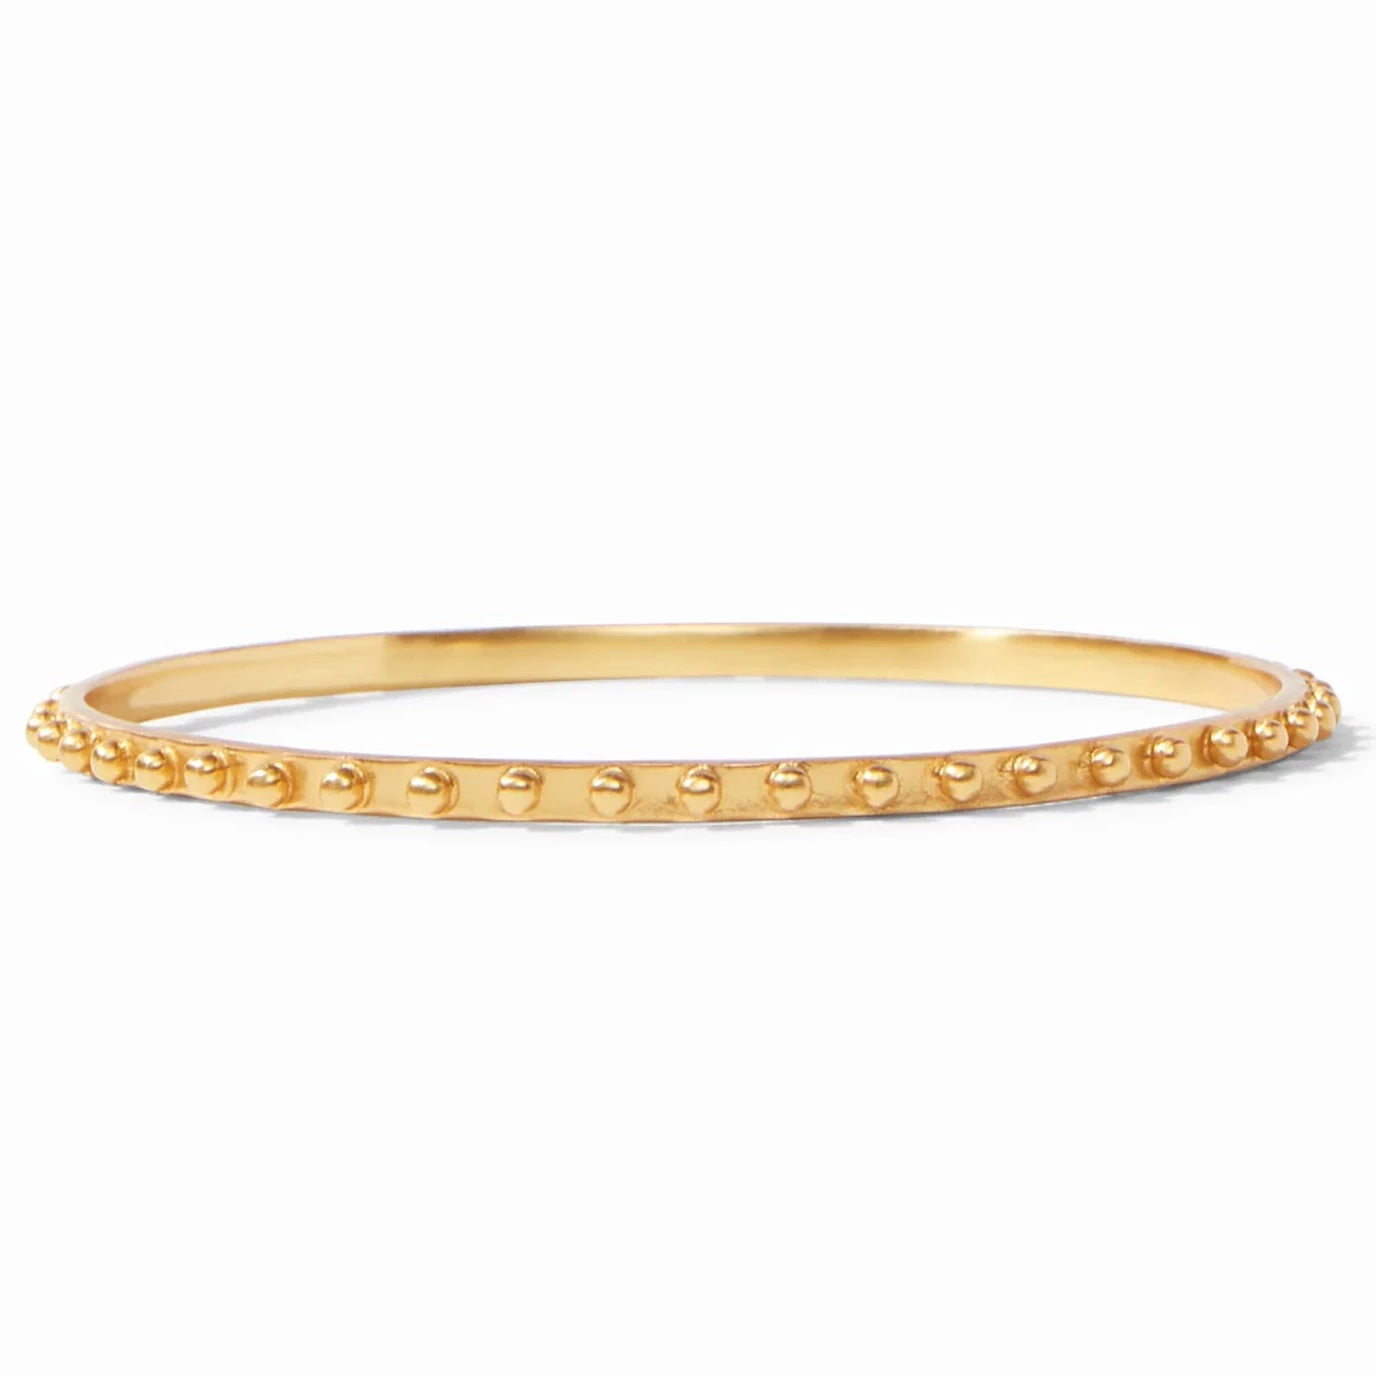 Julie Vos 24K Gold Plated SoHo Bangle Bracelet, Medium